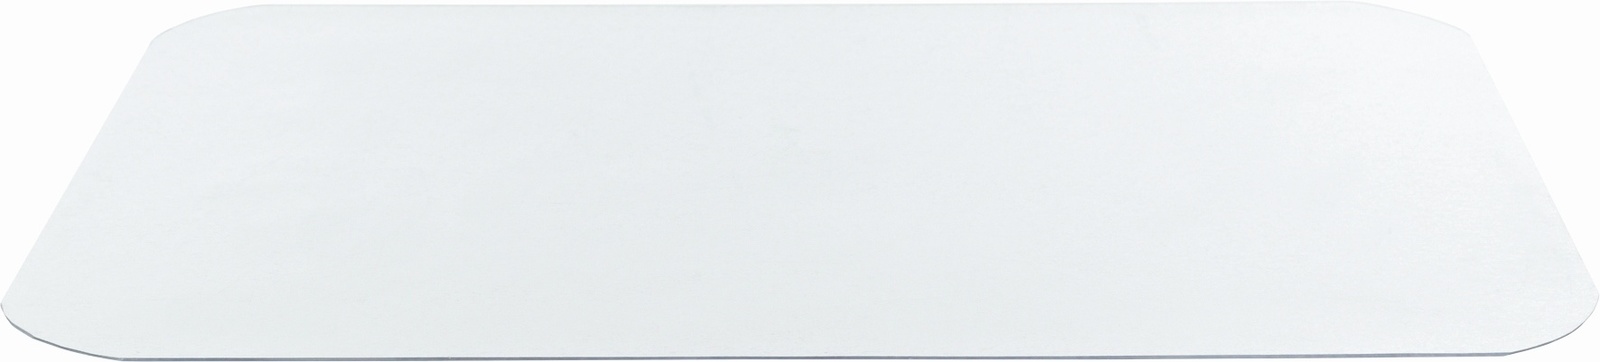 Trixie Trixie коврик под миску, прозрачный (48×30см) trixie trixie коврик под миску силикон 48х27 см 48х27 см